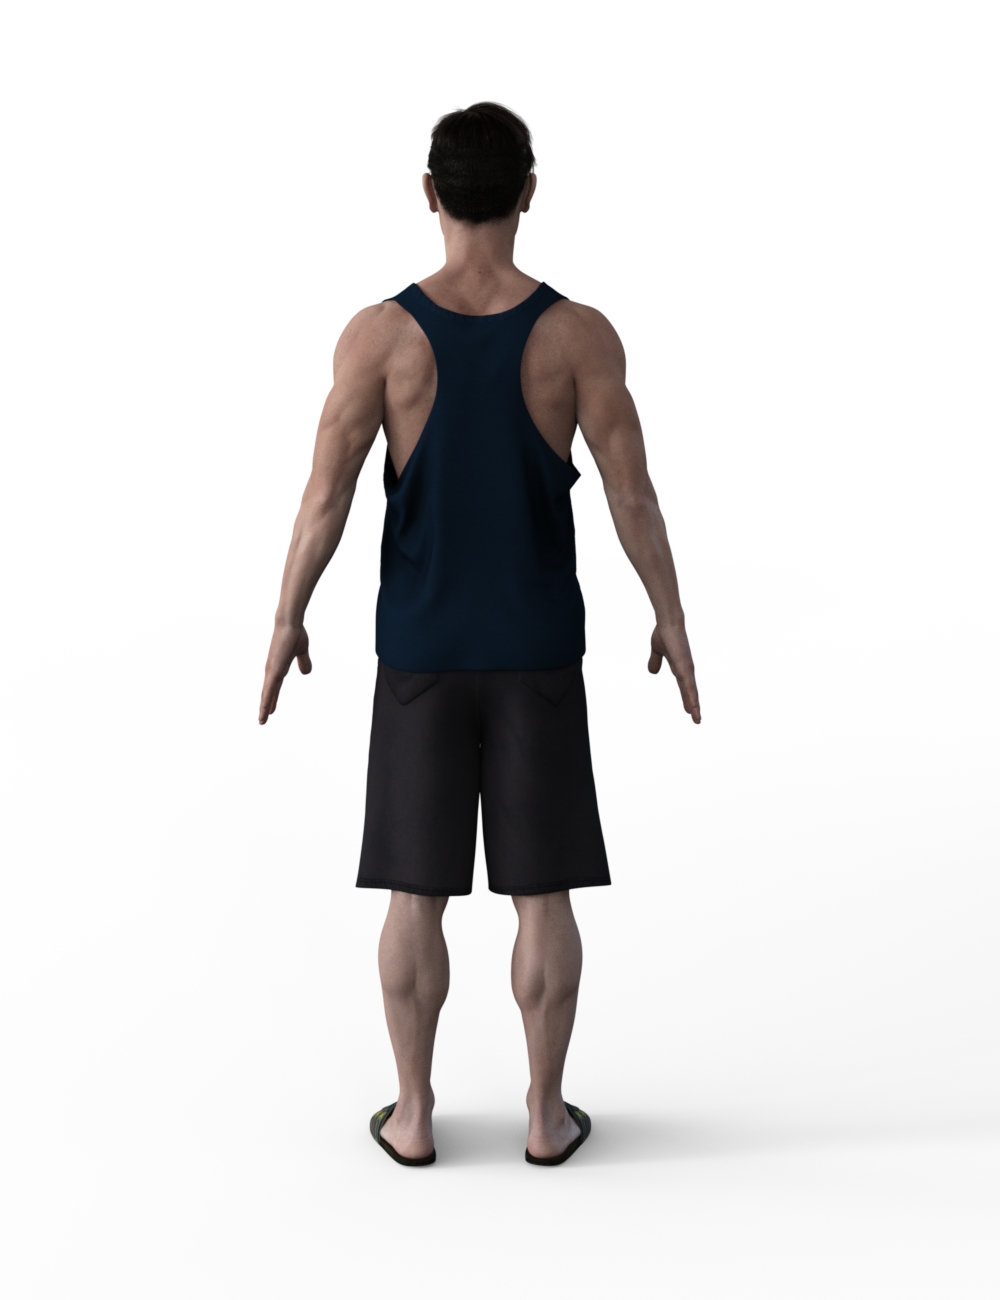 FBX- Lee Male Beach Wear by: Paleo, 3D Models by Daz 3D